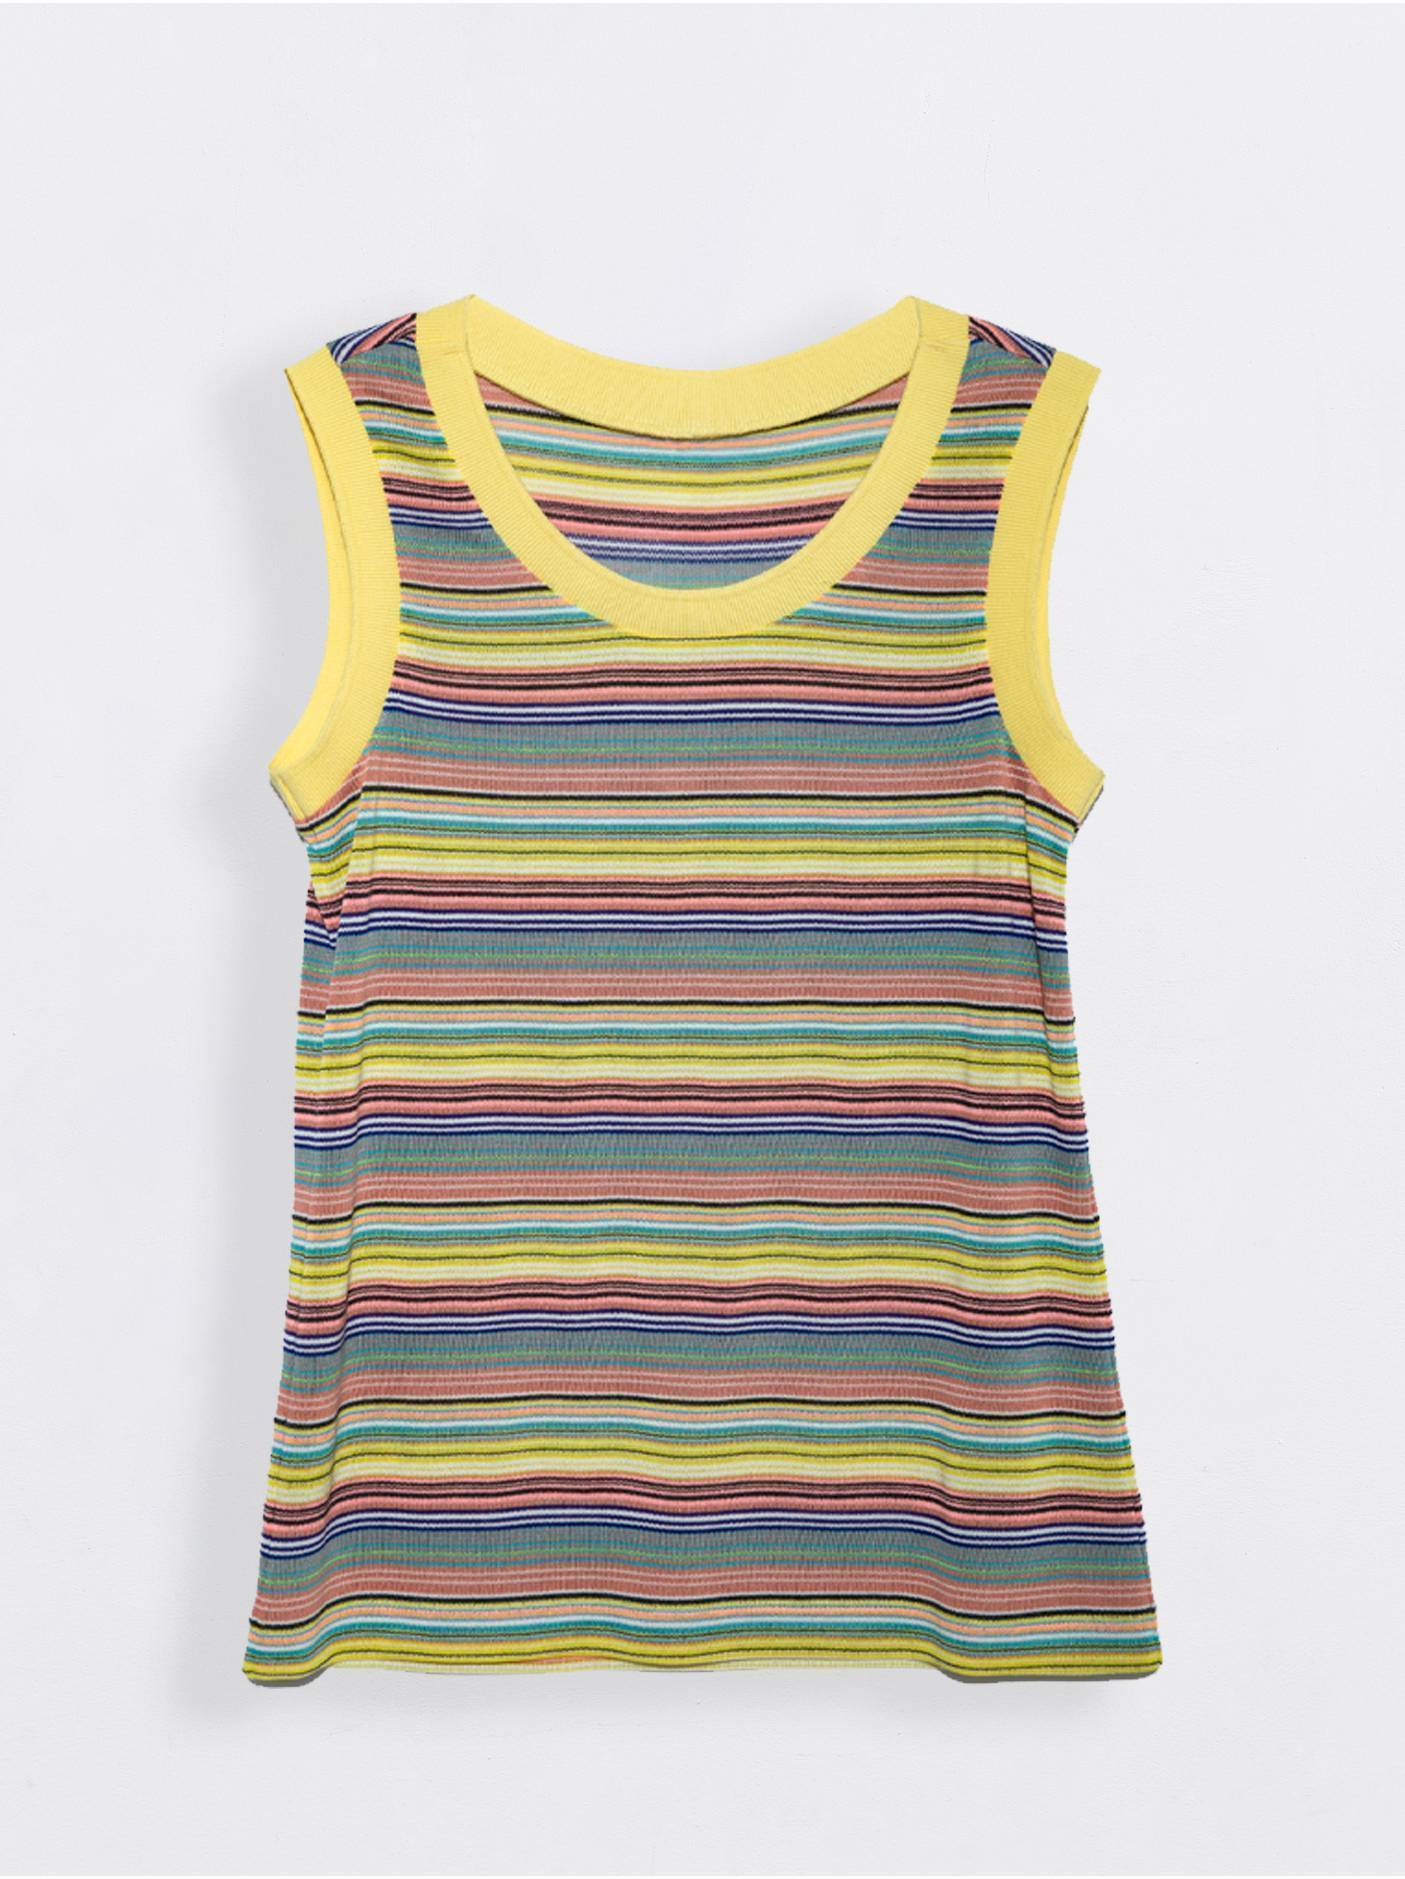 Топ в полоску с эластичными манжетами LD 921-1 Conte ⭐️, цвет yellow stripes, размер 170-84 - фото 1